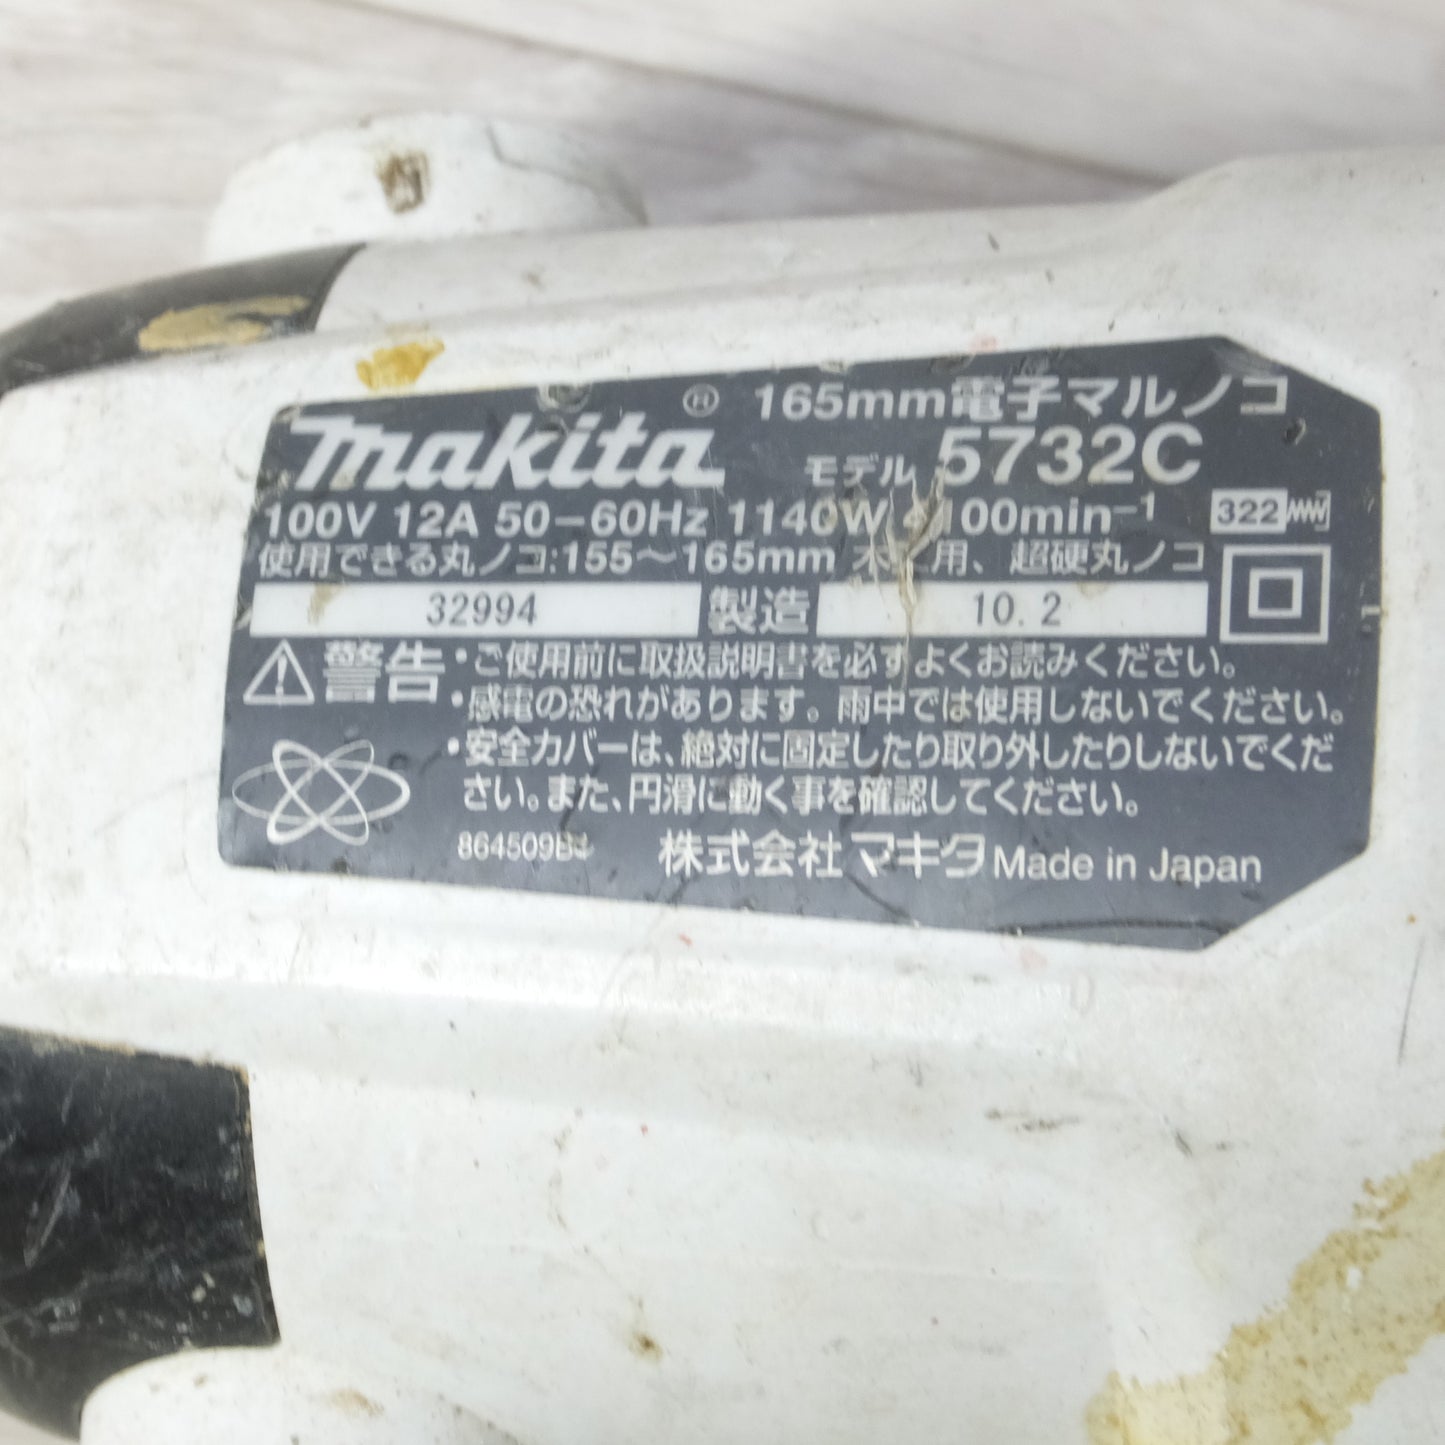 [送料無料] ◆makita マキタ 165mm 電子マルノコ 5732C 切断機 丸のこ 電動工具 100V◆